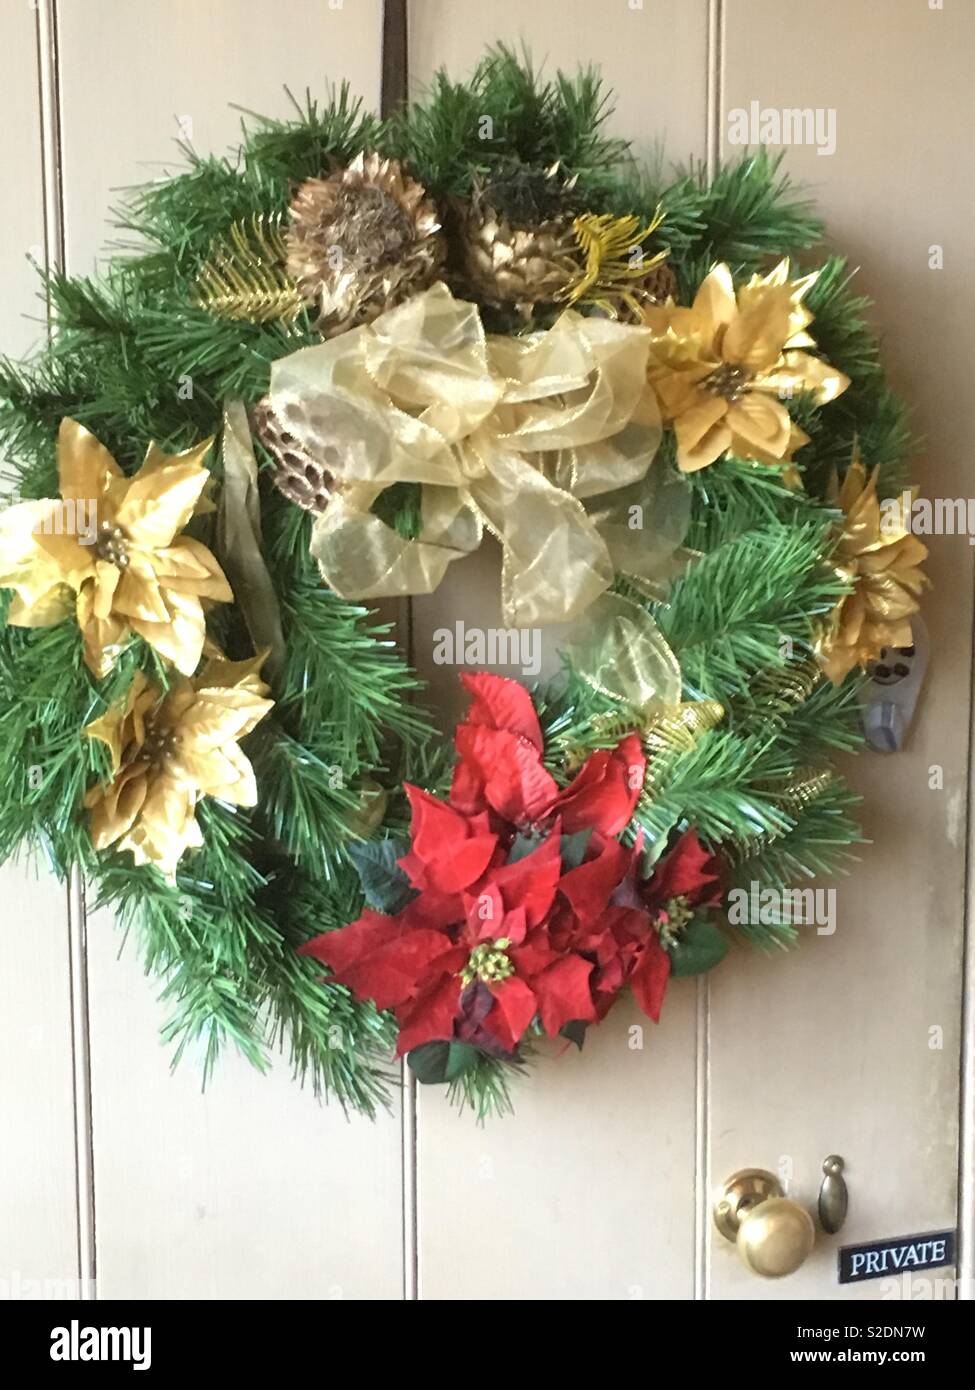 Handgefertigte vintage floral Christmas wreath Dekoration hängen von alte weiße Tür mit Messing Griffe und alten privaten unterzeichnen. Bänder in Gold mit roten Weihnachtsstern Blumen auf grünem Laub Fichte. Stockfoto